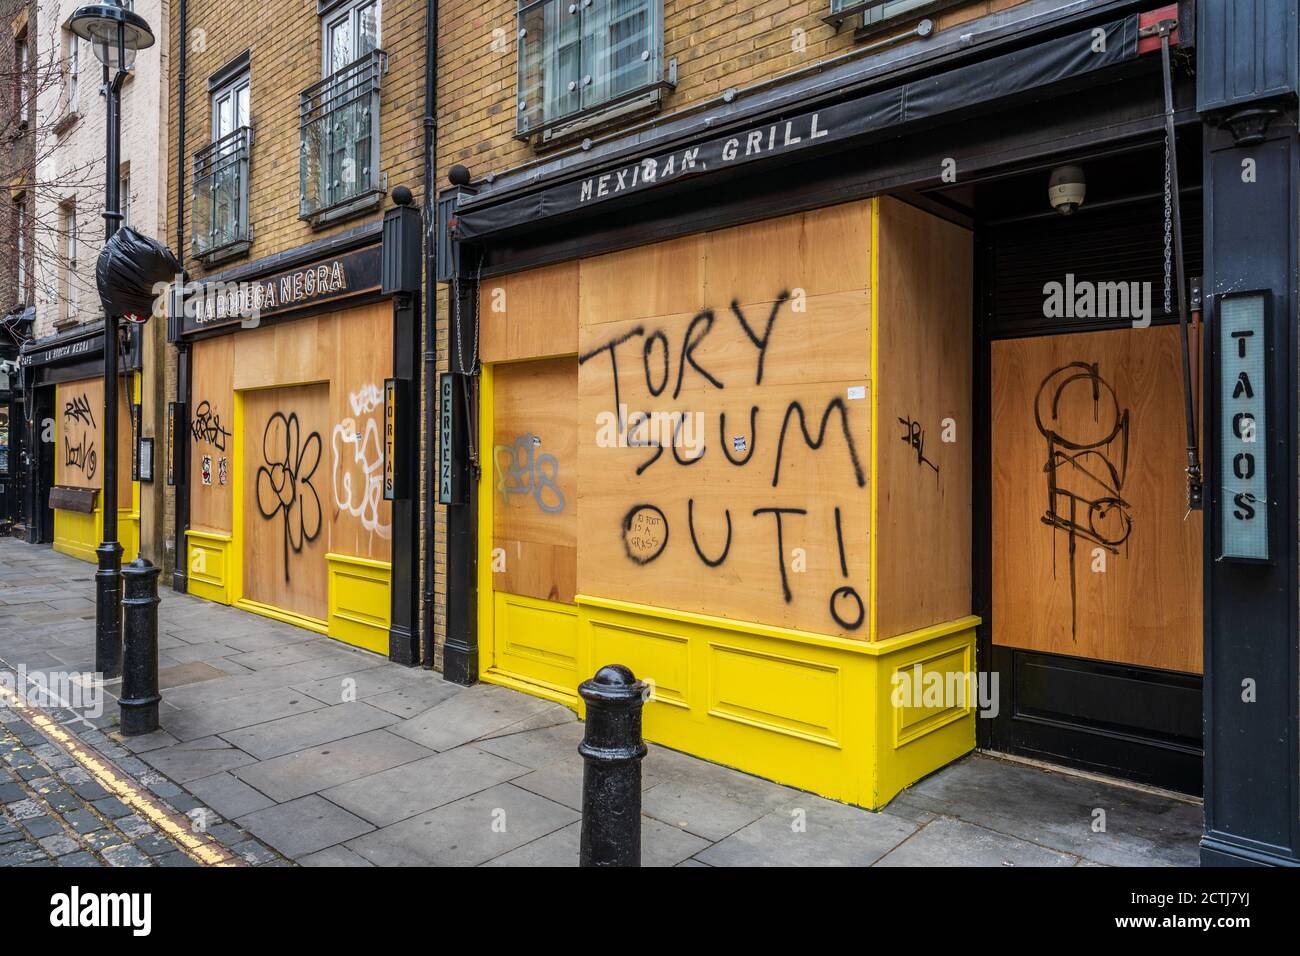 Londres Lockdown - a embarqué dans les restaurants du quartier de Soho à Londres pendant le coronavirus Pandemic Lockdown - anti-gouvernement graffiti sur les parings. Banque D'Images